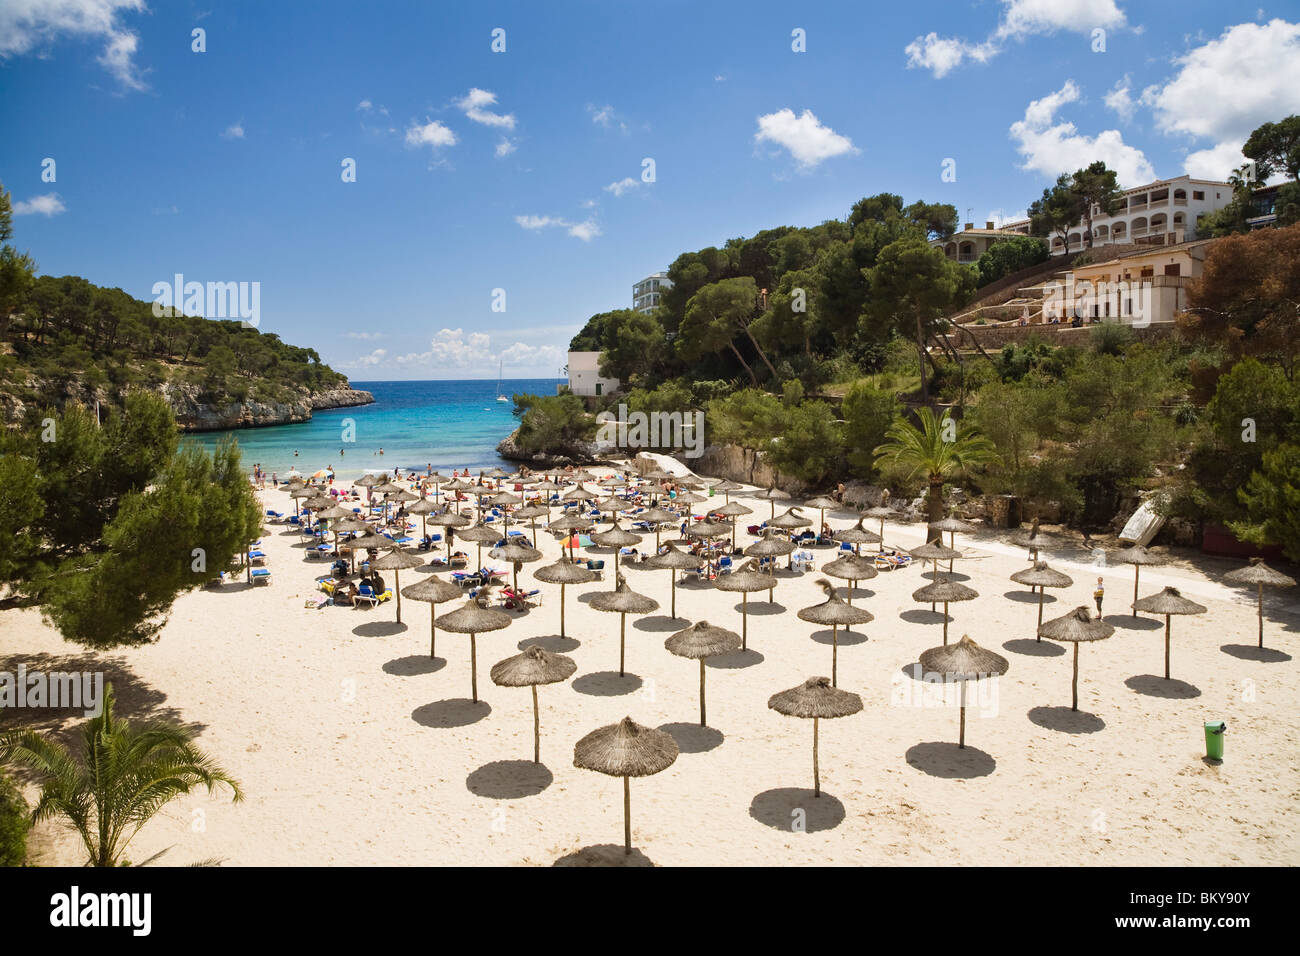 Spiaggia di sabbia fine attrezzata con ombrelloni presso la baia di Cala Santanyi, Maiorca, isole Baleari, Spagna, Europa Foto Stock